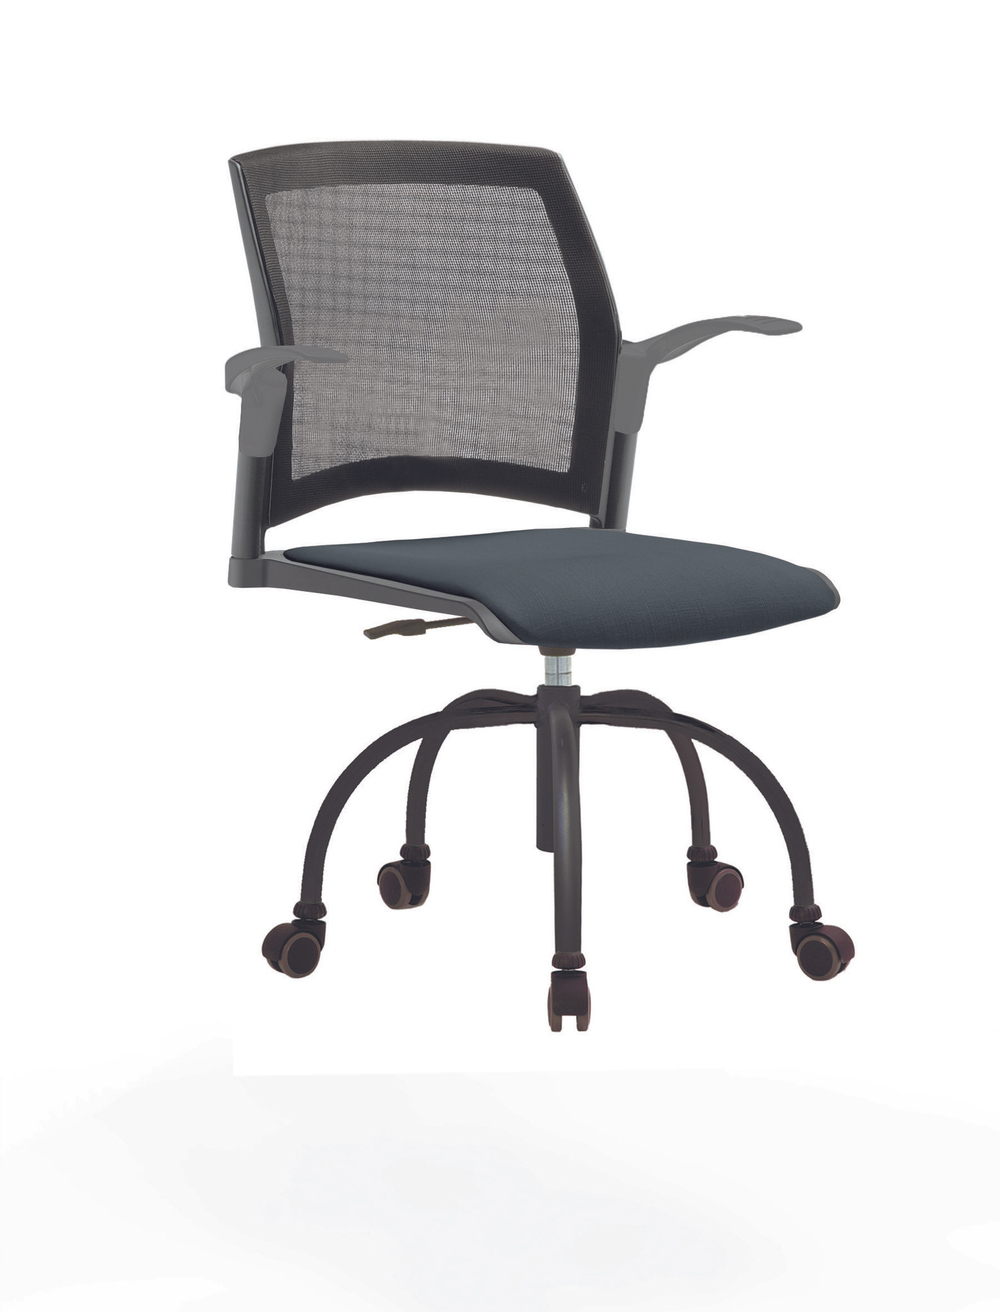 Кресло Rewind каркас черный, пластик серый, база паук краска черная, с открытыми подлокотниками, сиденье антрацит, спинка-сетка